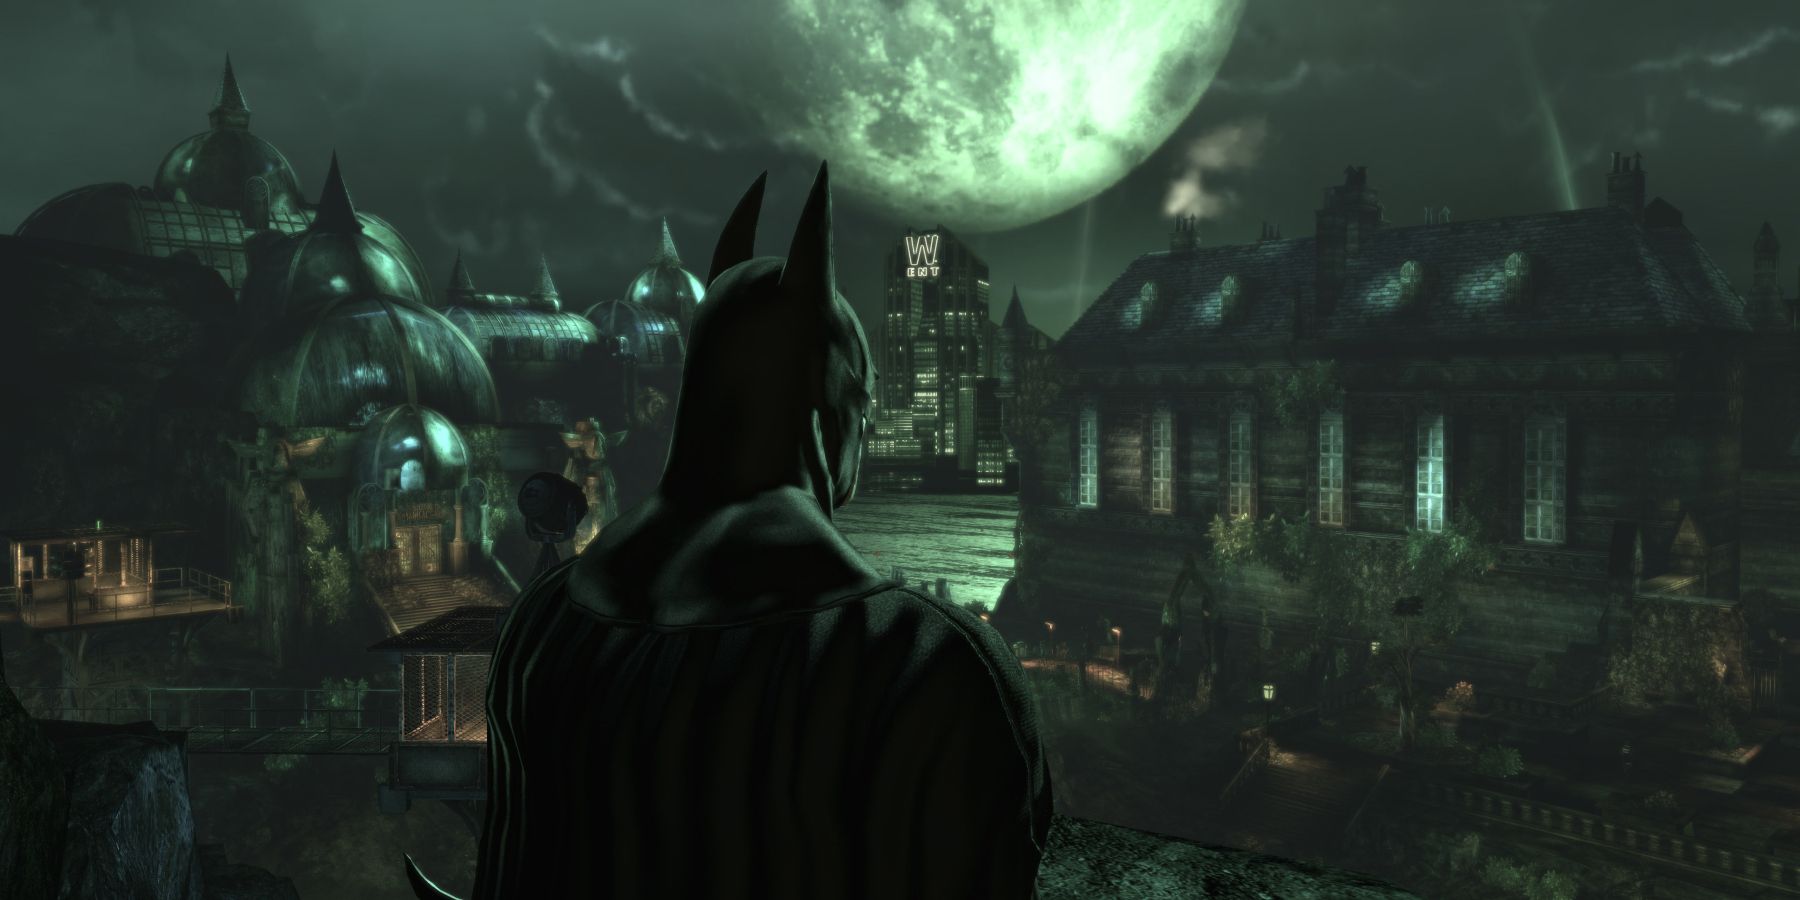 Бэтмен аркхем асилум город рыцарь третий акт повествование